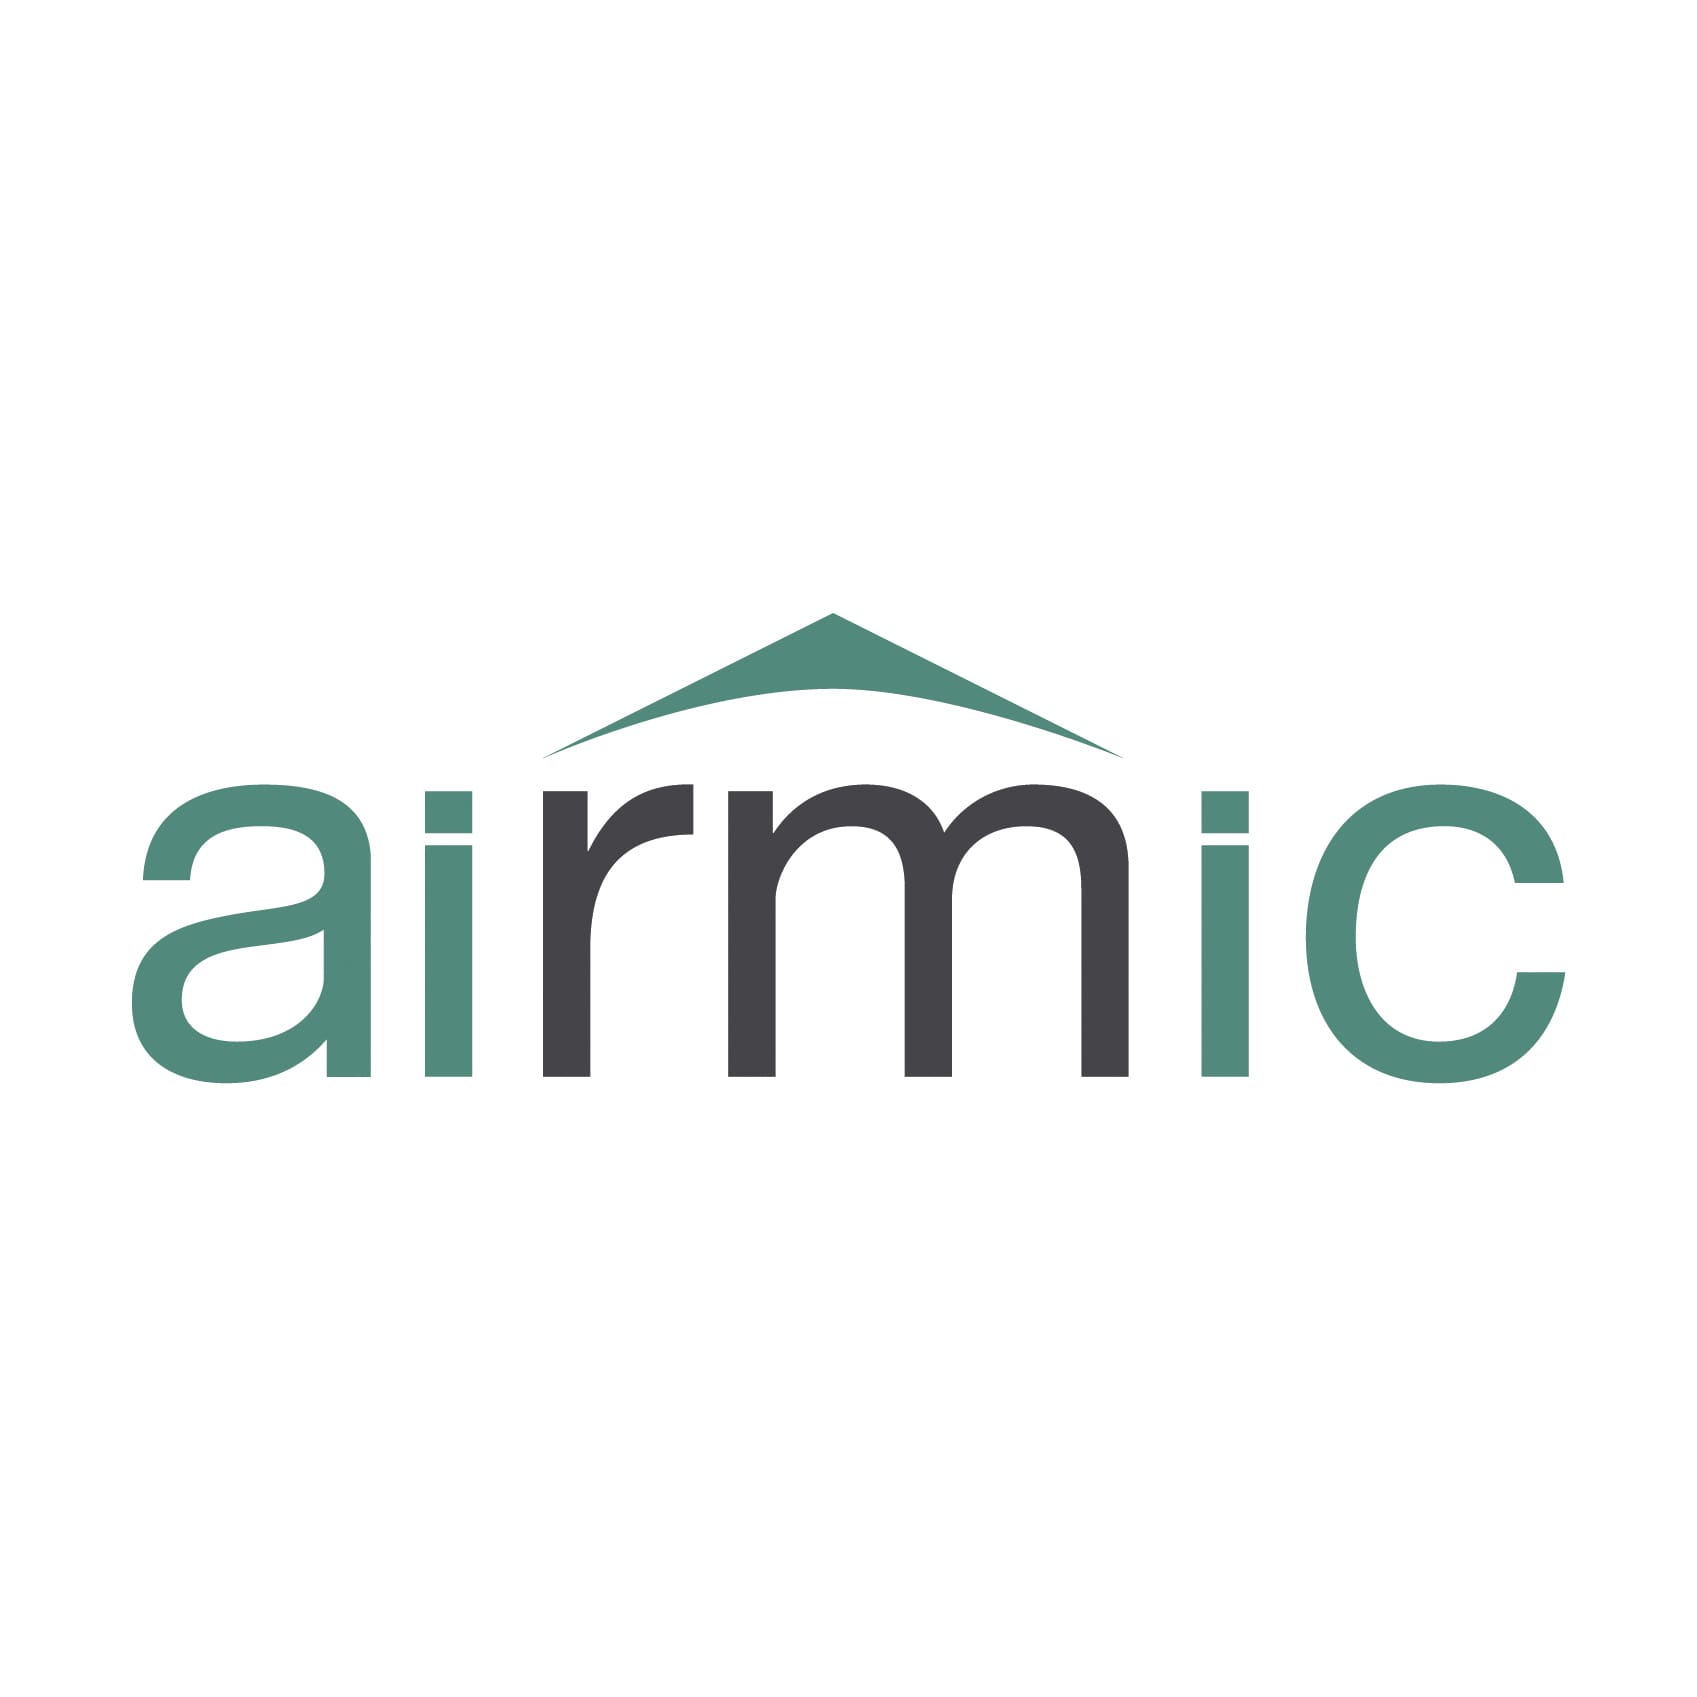 airmic logo 2015 RGB COLOUR copy